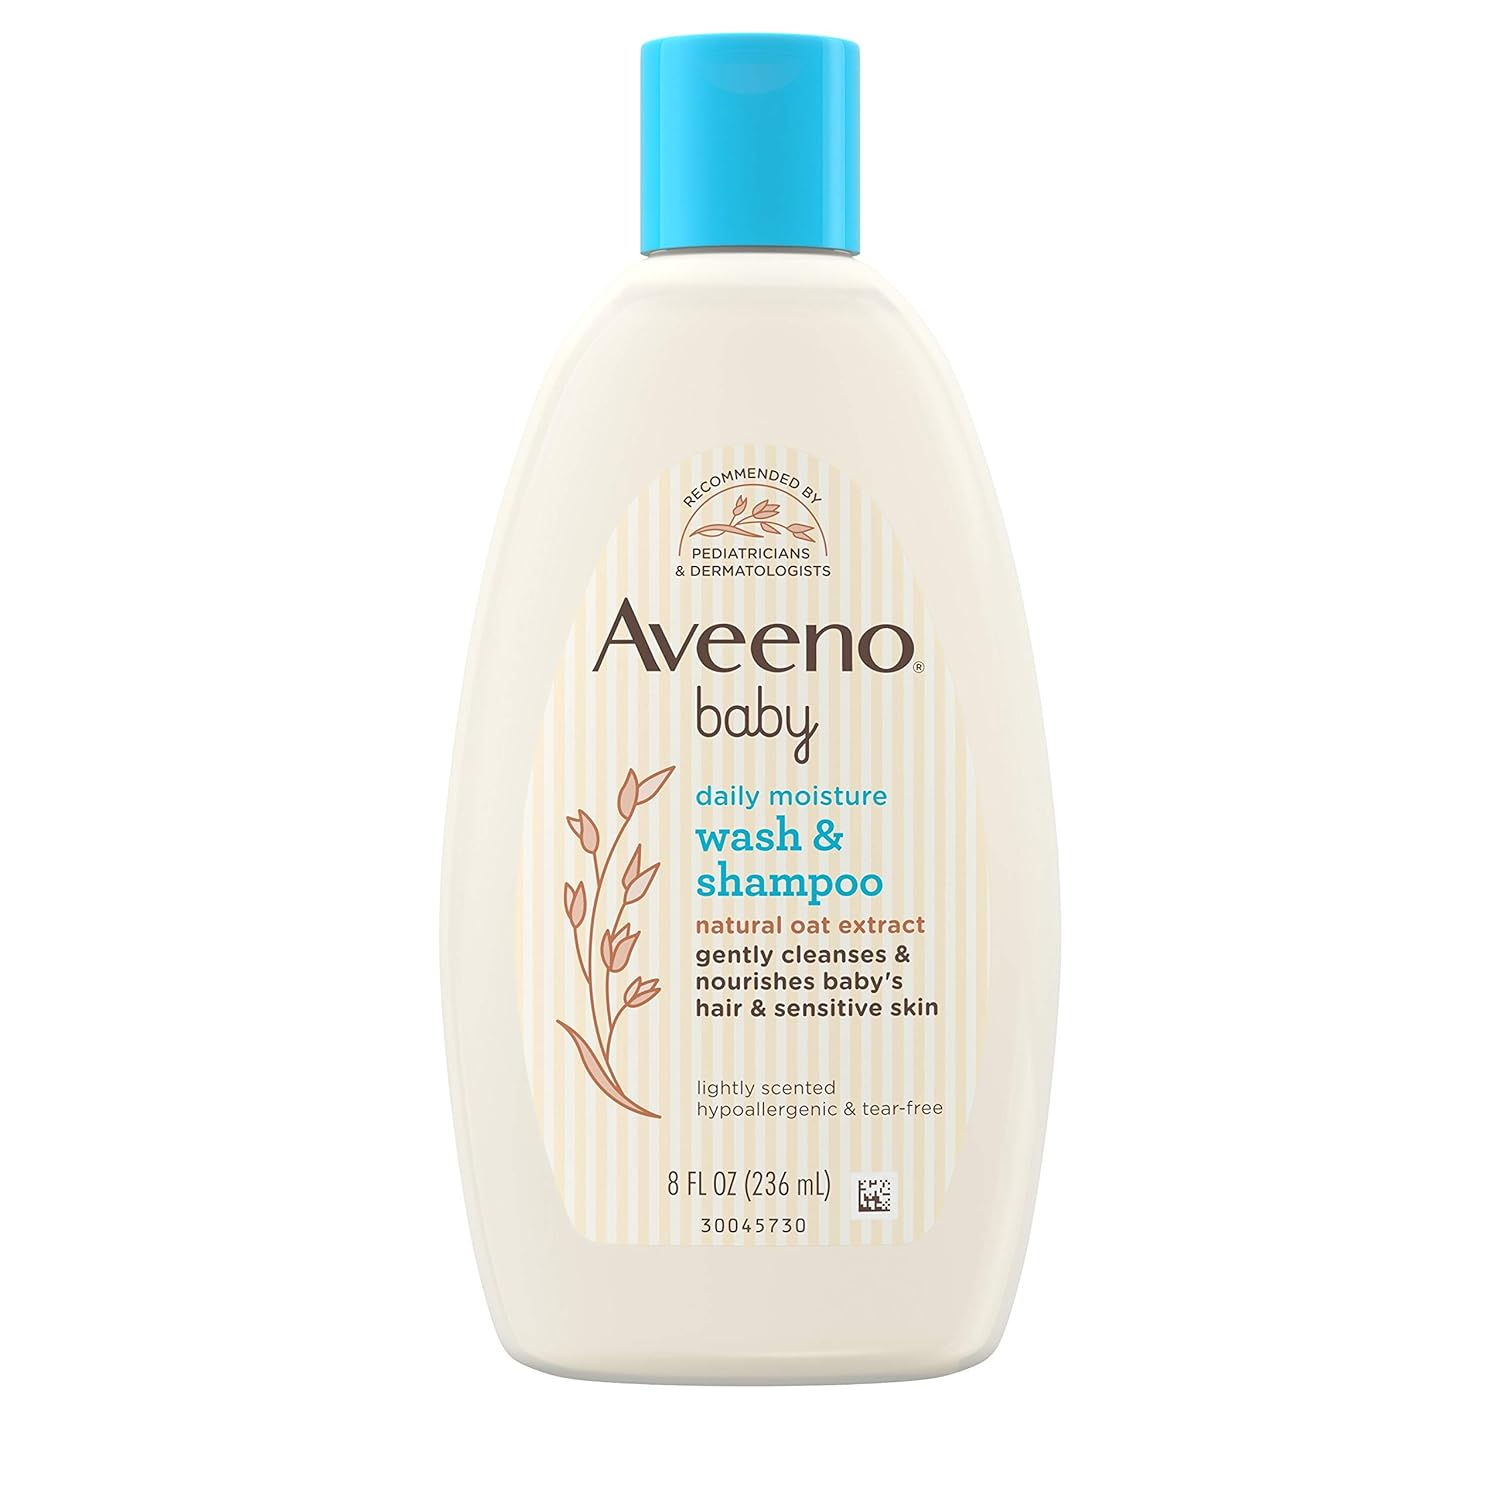 Sie erklärten, dass das Aveeno Baby Wash and Shampoo genauso gut funktioniert wie teure chemische Lockerungsmittel